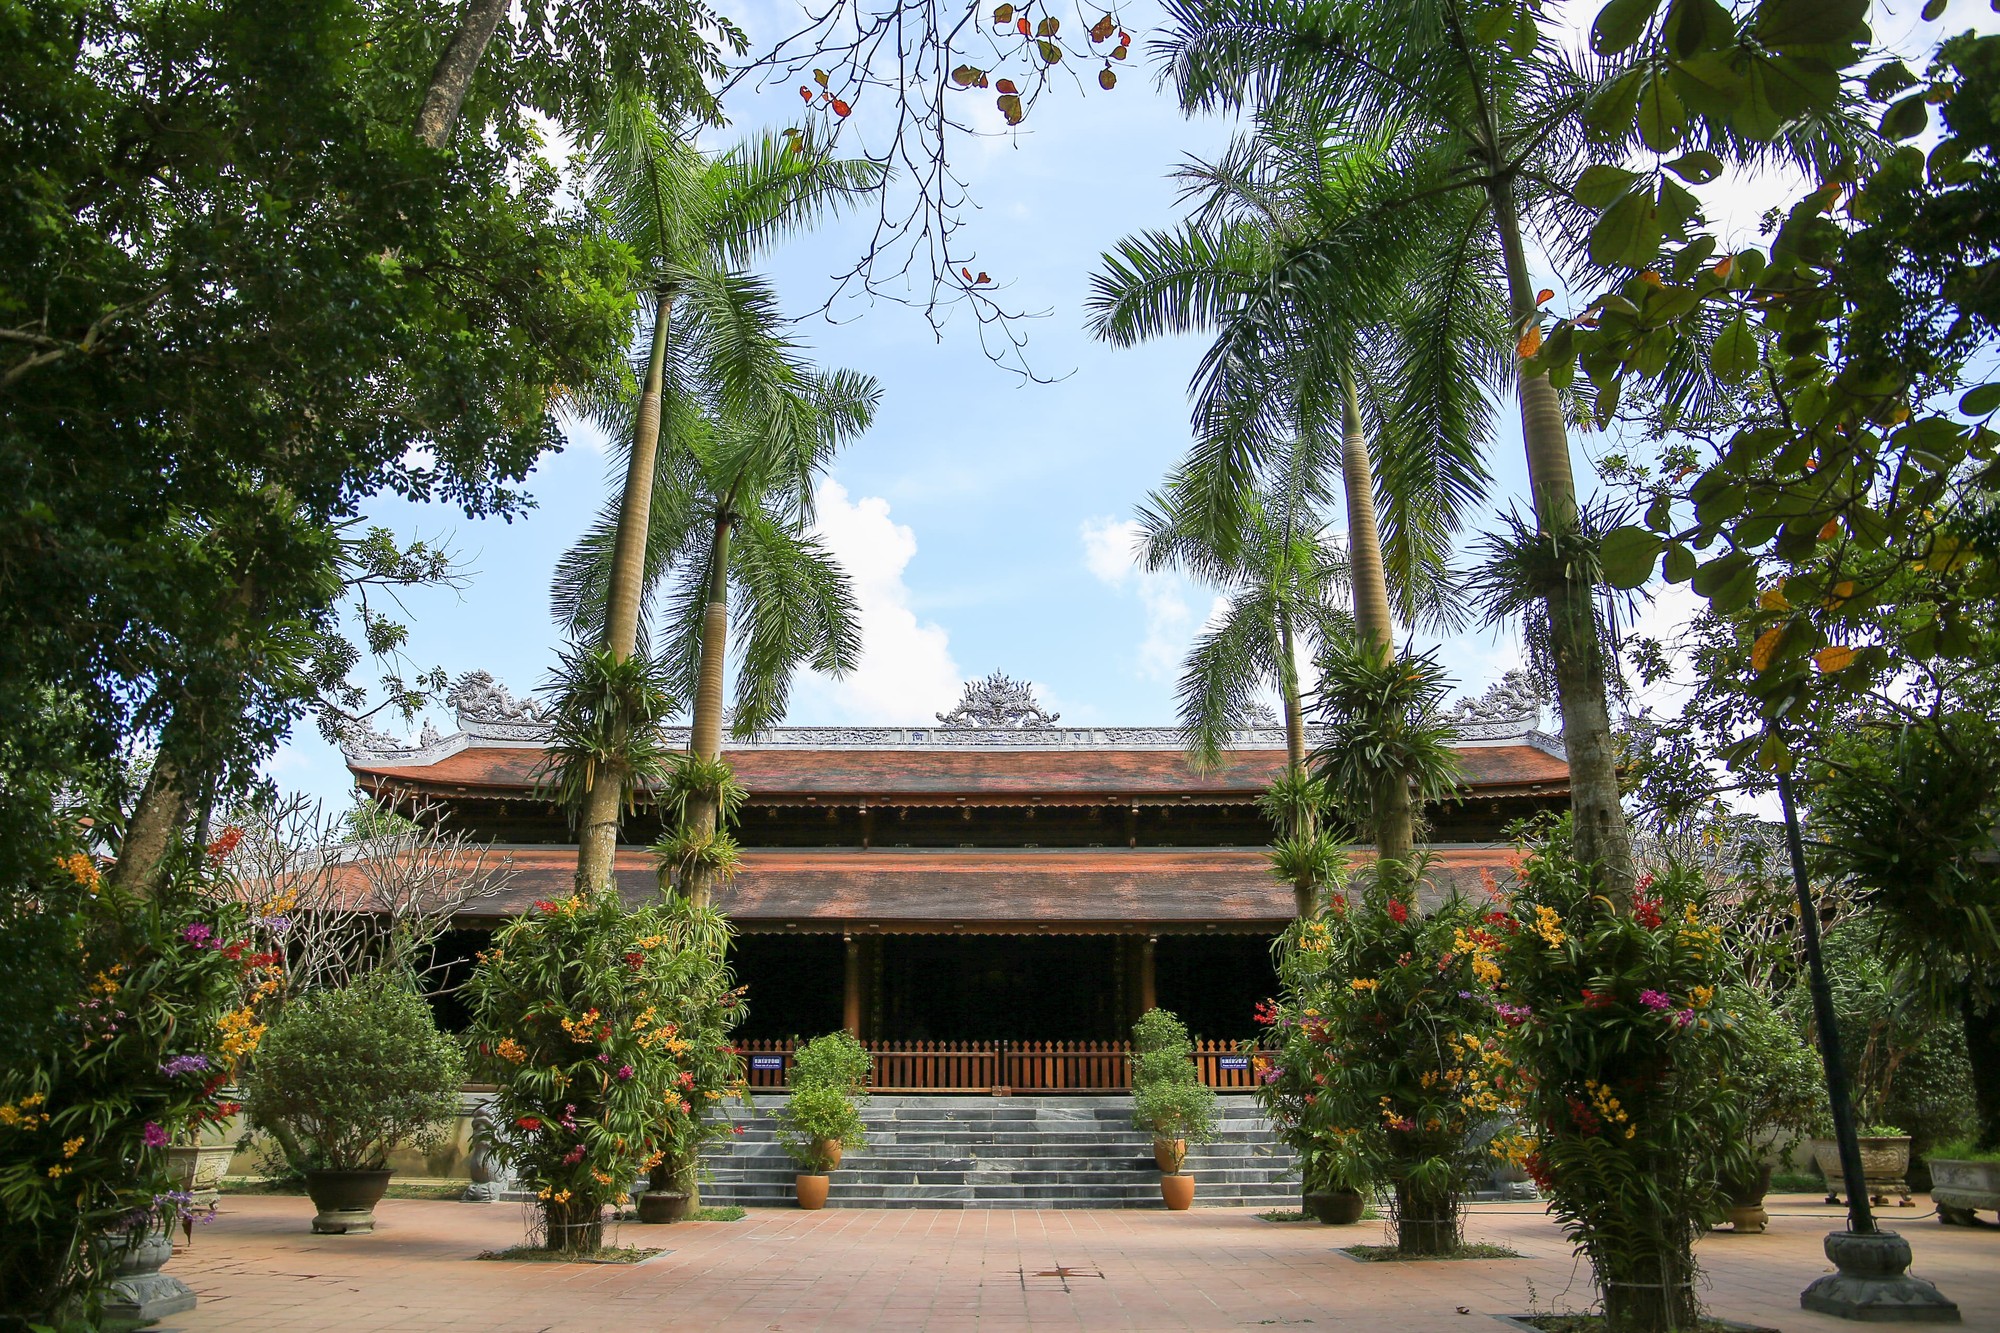 Chùa Diệu Đế tọa lạc trên đường Bạch Đằng, phường Gia Hội, TP Huế. Đây là một trong ba ngôi Quốc tự của triều Nguyễn còn tồn tại đến ngày nay (cùng với chùa Thiên Mụ và chùa Thánh Duyên).